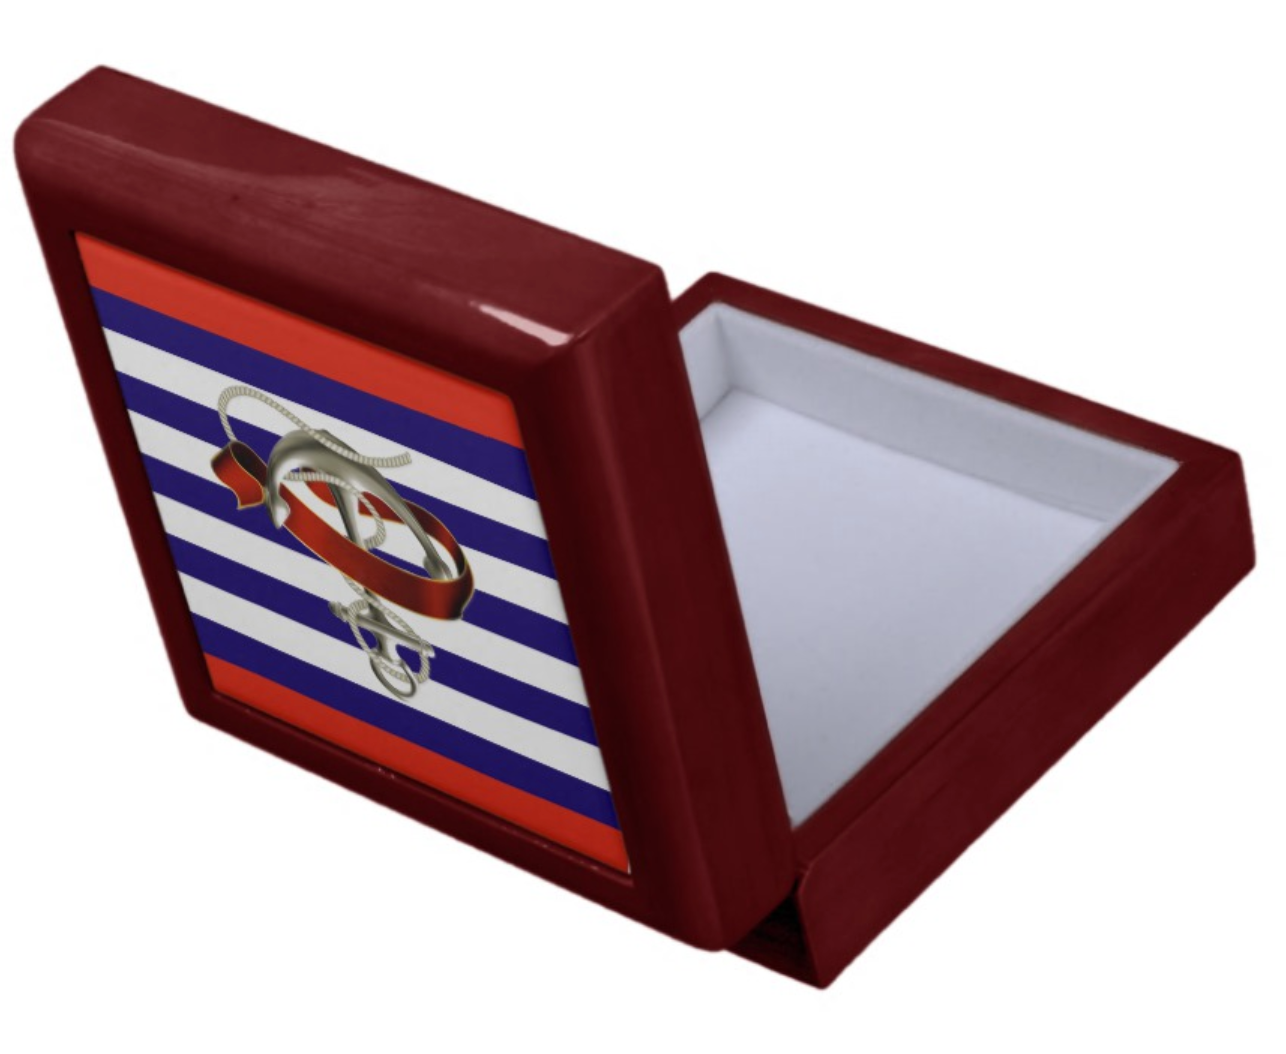 Keepsake/Jewelry Box - Nautical Anchor Design - Mahogany Lacquer Box Felt Lined